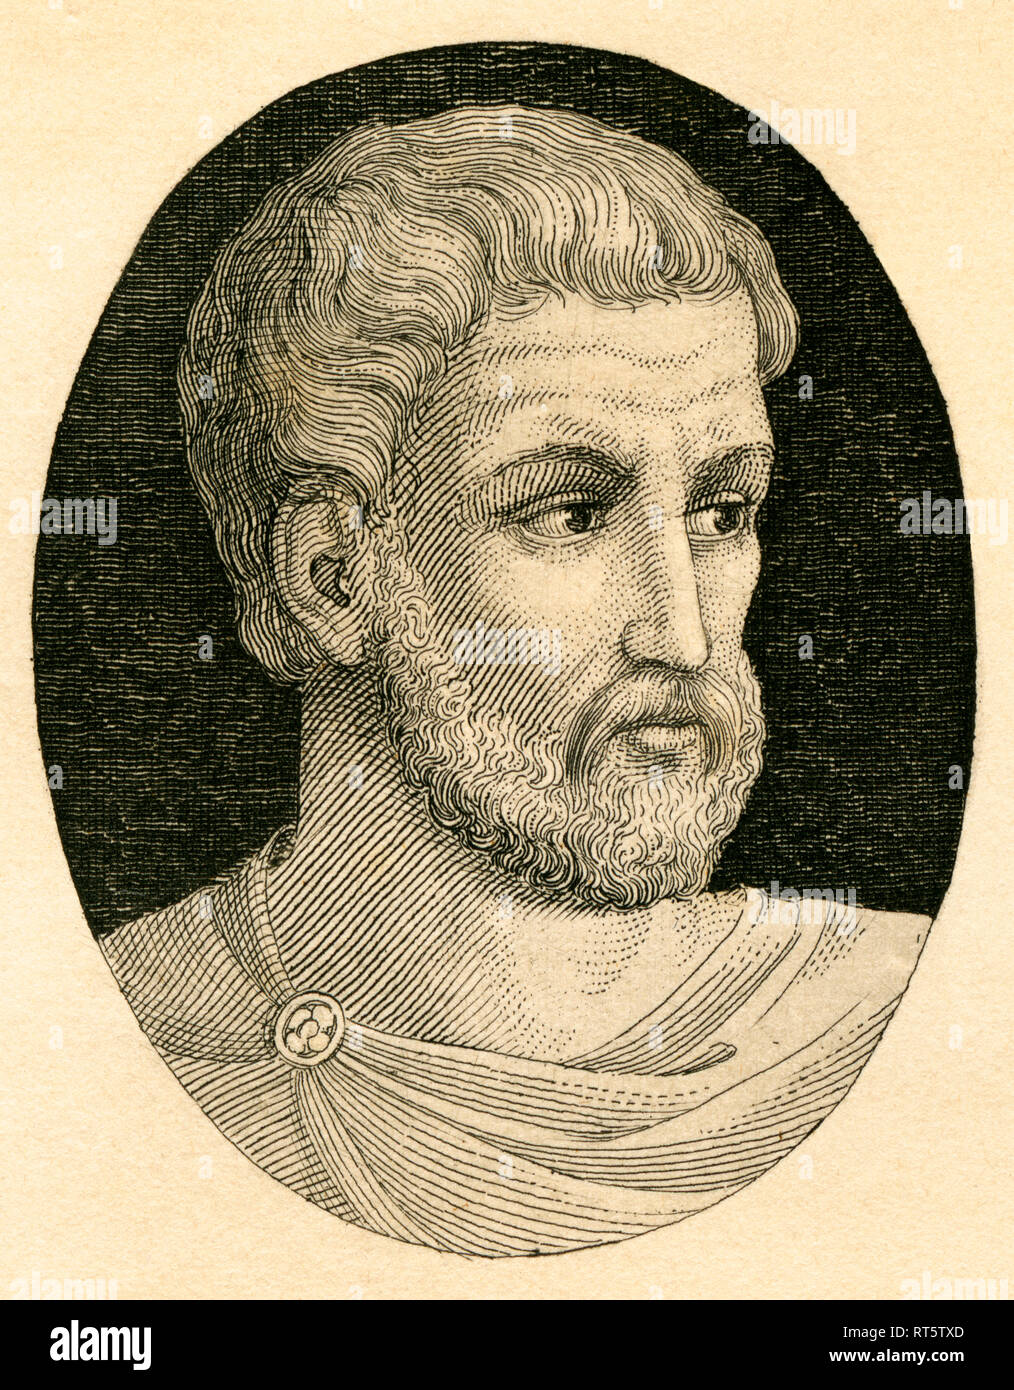 Pitagora di Samo, filosofo greco, incisione su rame da Strahlheim, circa1840., artista del diritto d'autore non deve essere cancellata Foto Stock